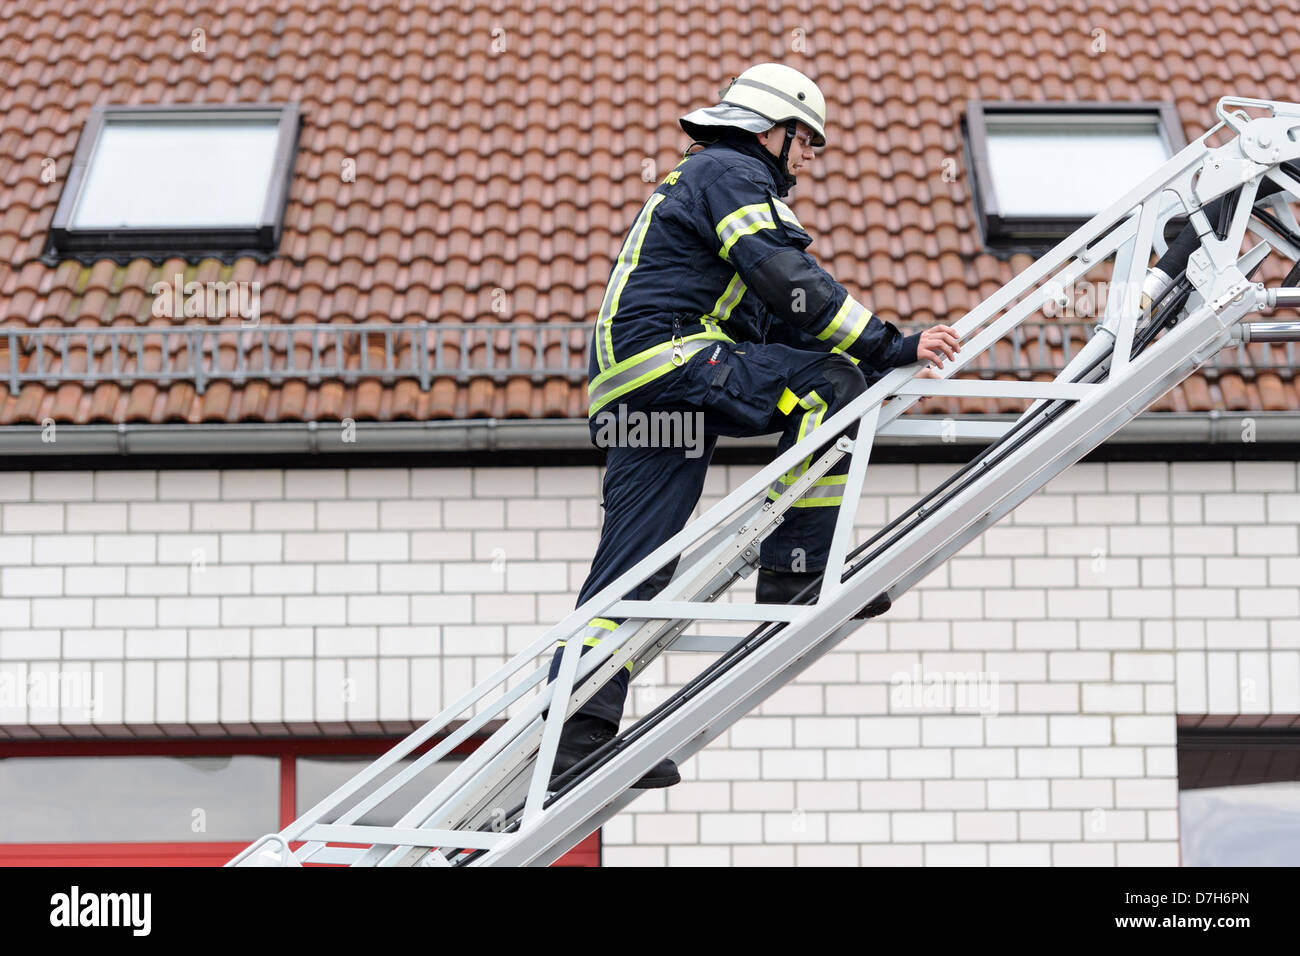 Ein Feuerwehrmann klettert eine Leiter. Foto: Robert Schlesinger  Stockfotografie - Alamy